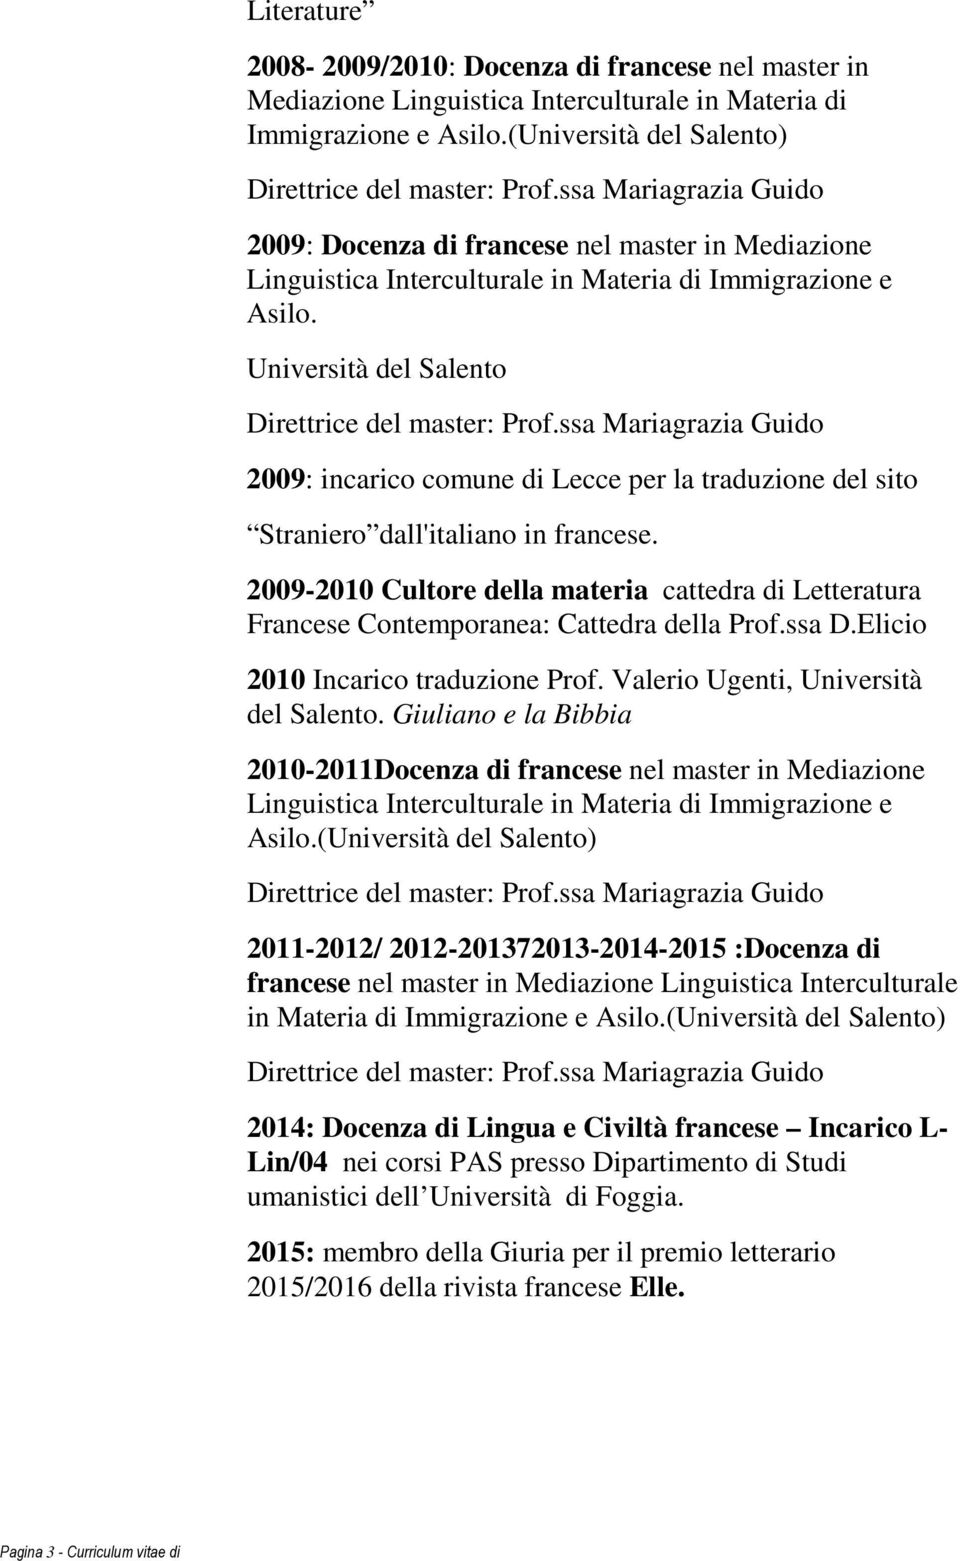 Università del Salento 2009: incarico comune di Lecce per la traduzione del sito Straniero dall'italiano in francese.